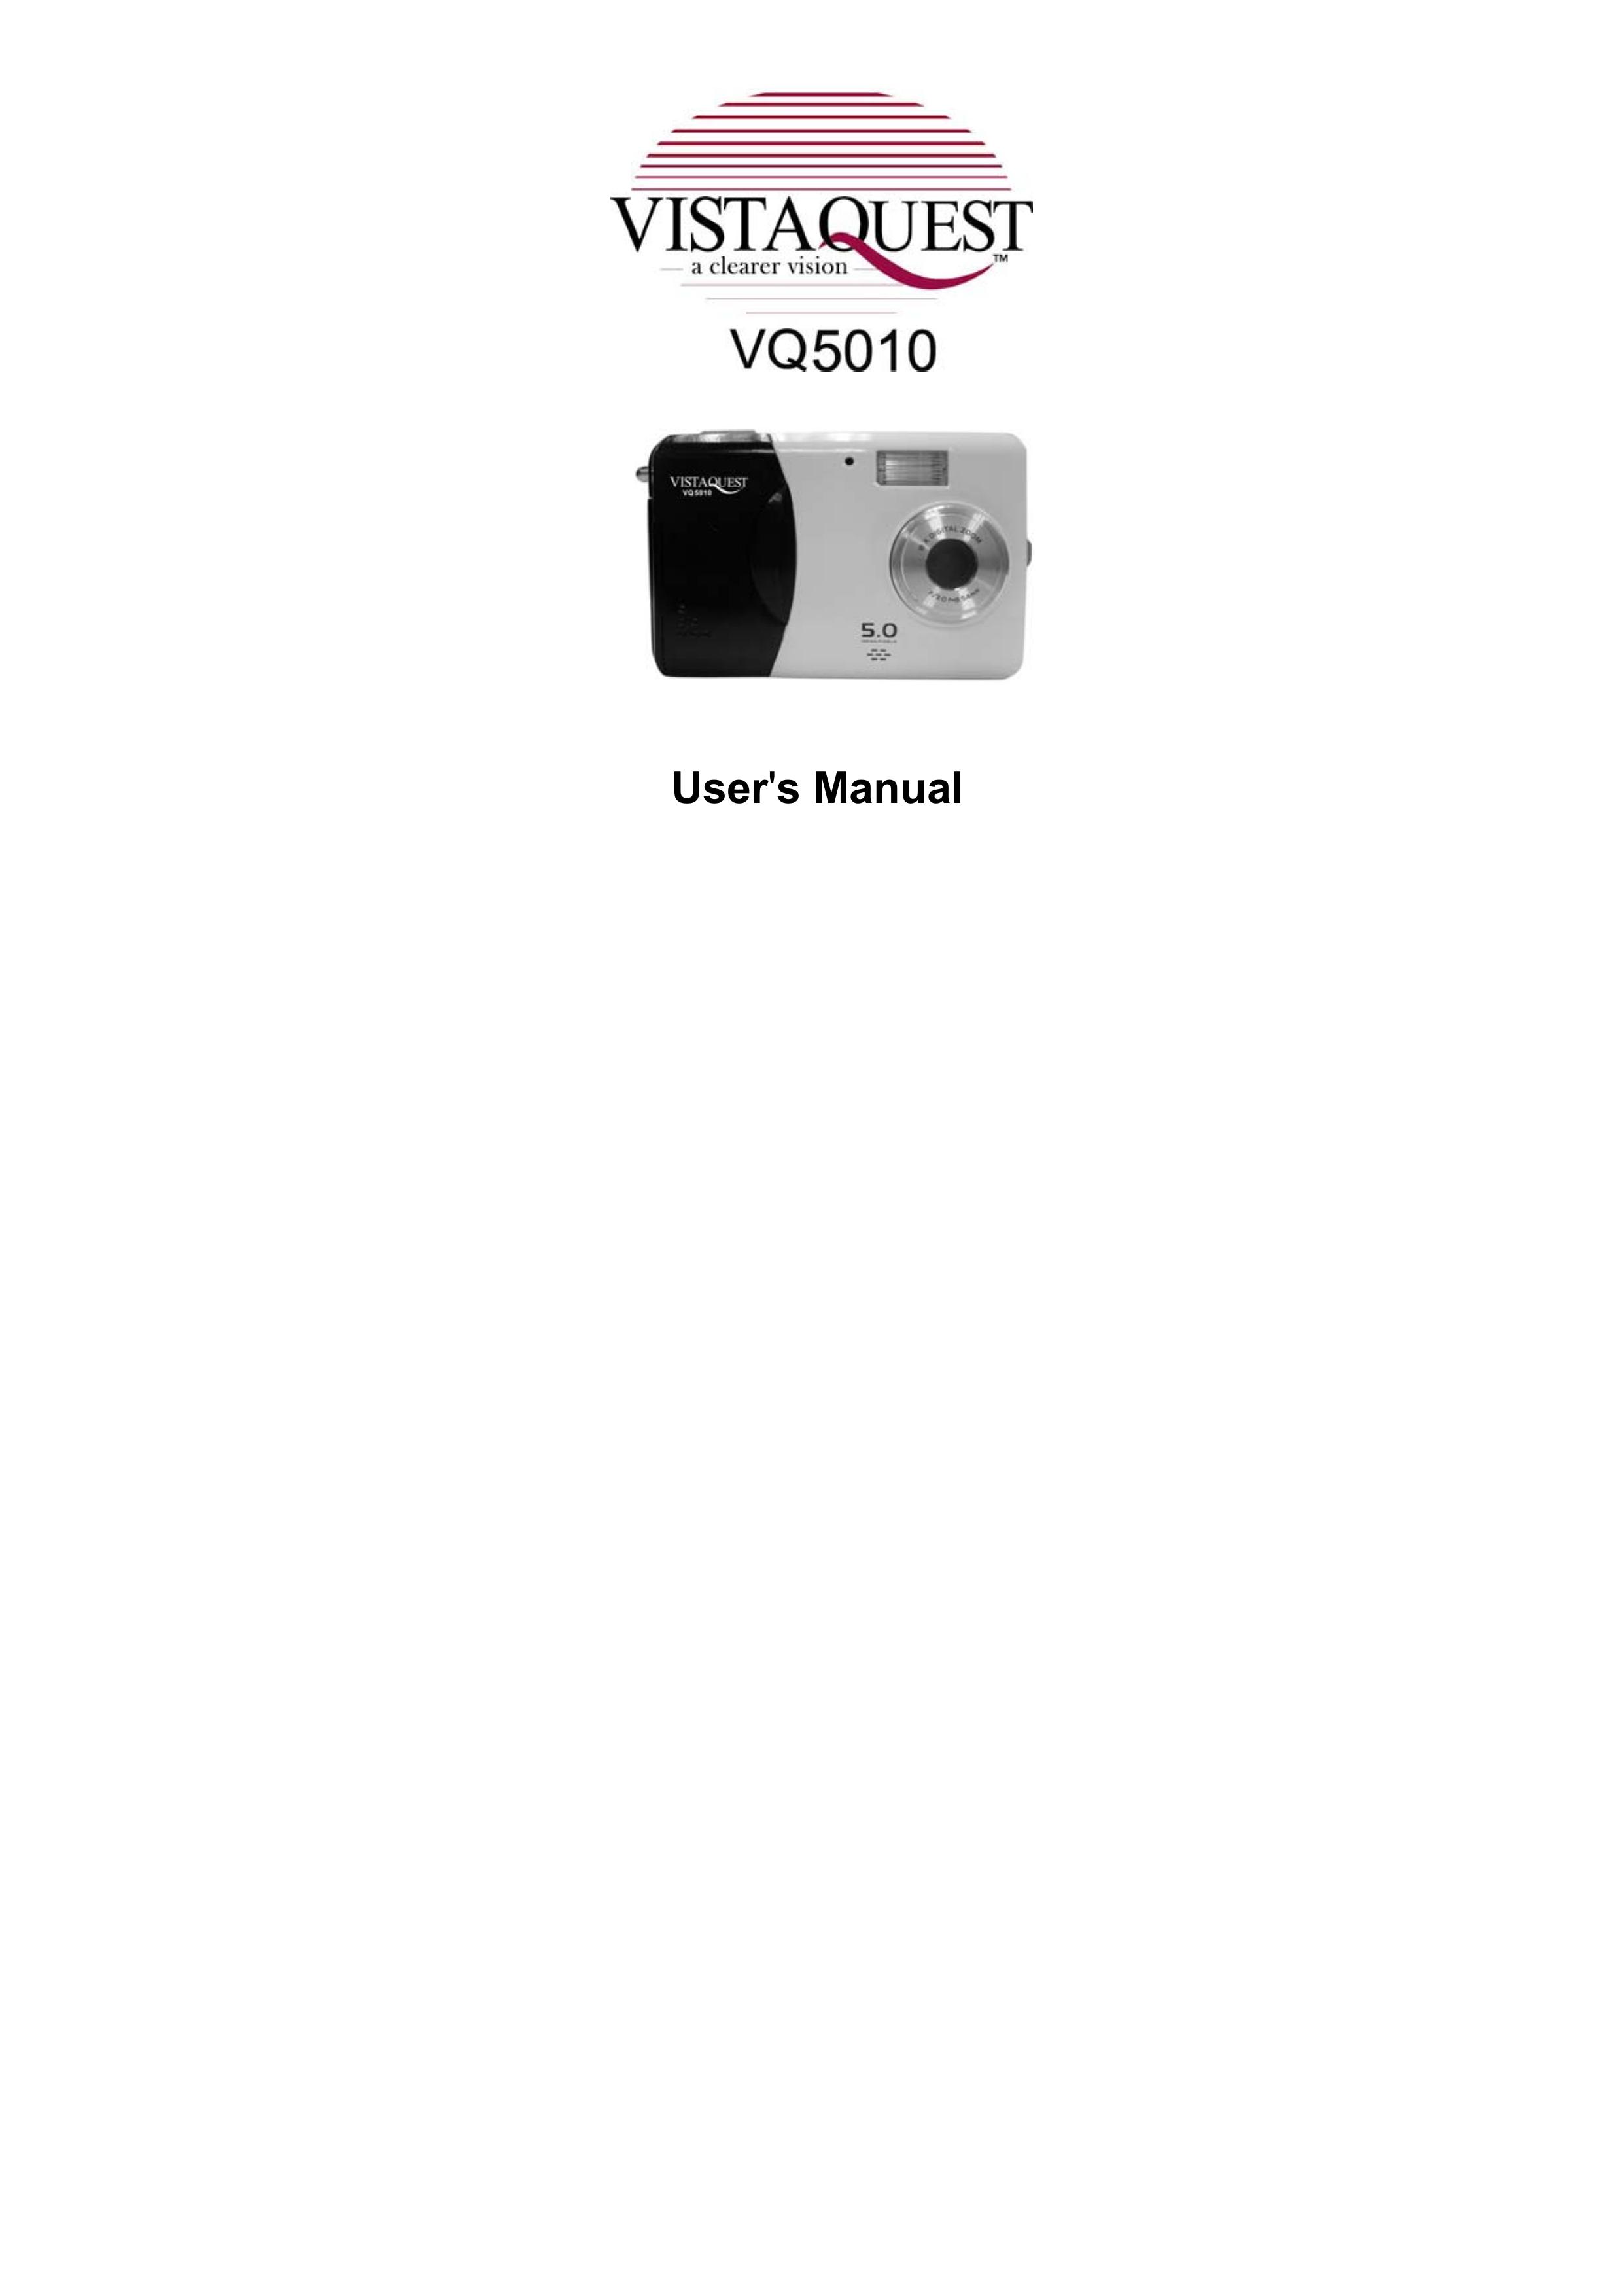 VistaQuest VQ 5010 Digital Camera User Manual